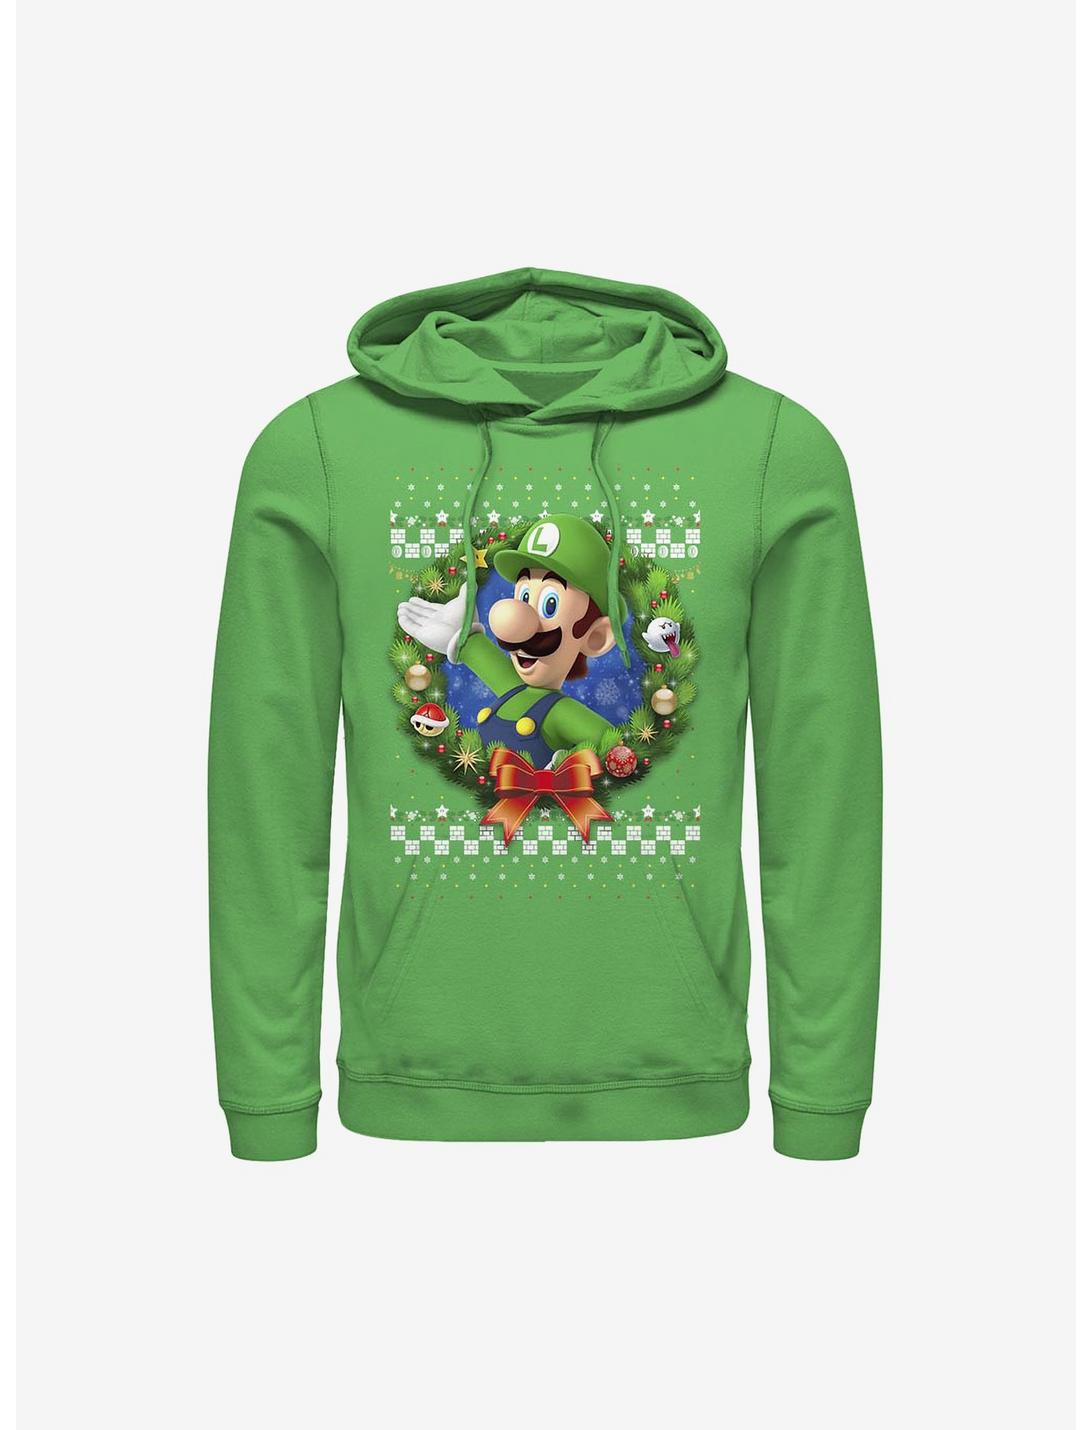 Super Mario Luigi Wreath Holiday Hoodie, KELLY, hi-res